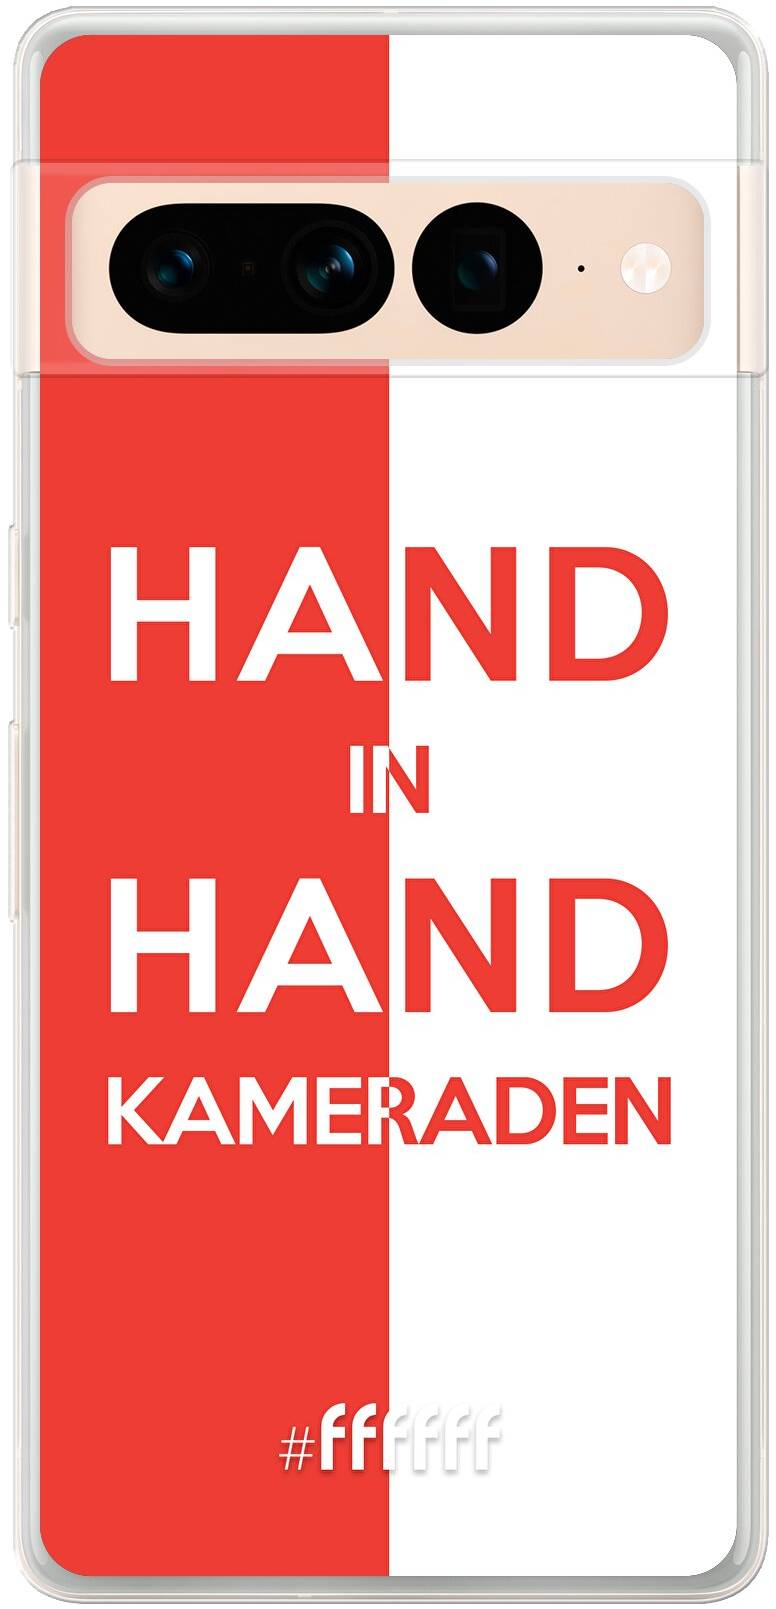 Feyenoord - Hand in hand, kameraden Pixel 7 Pro